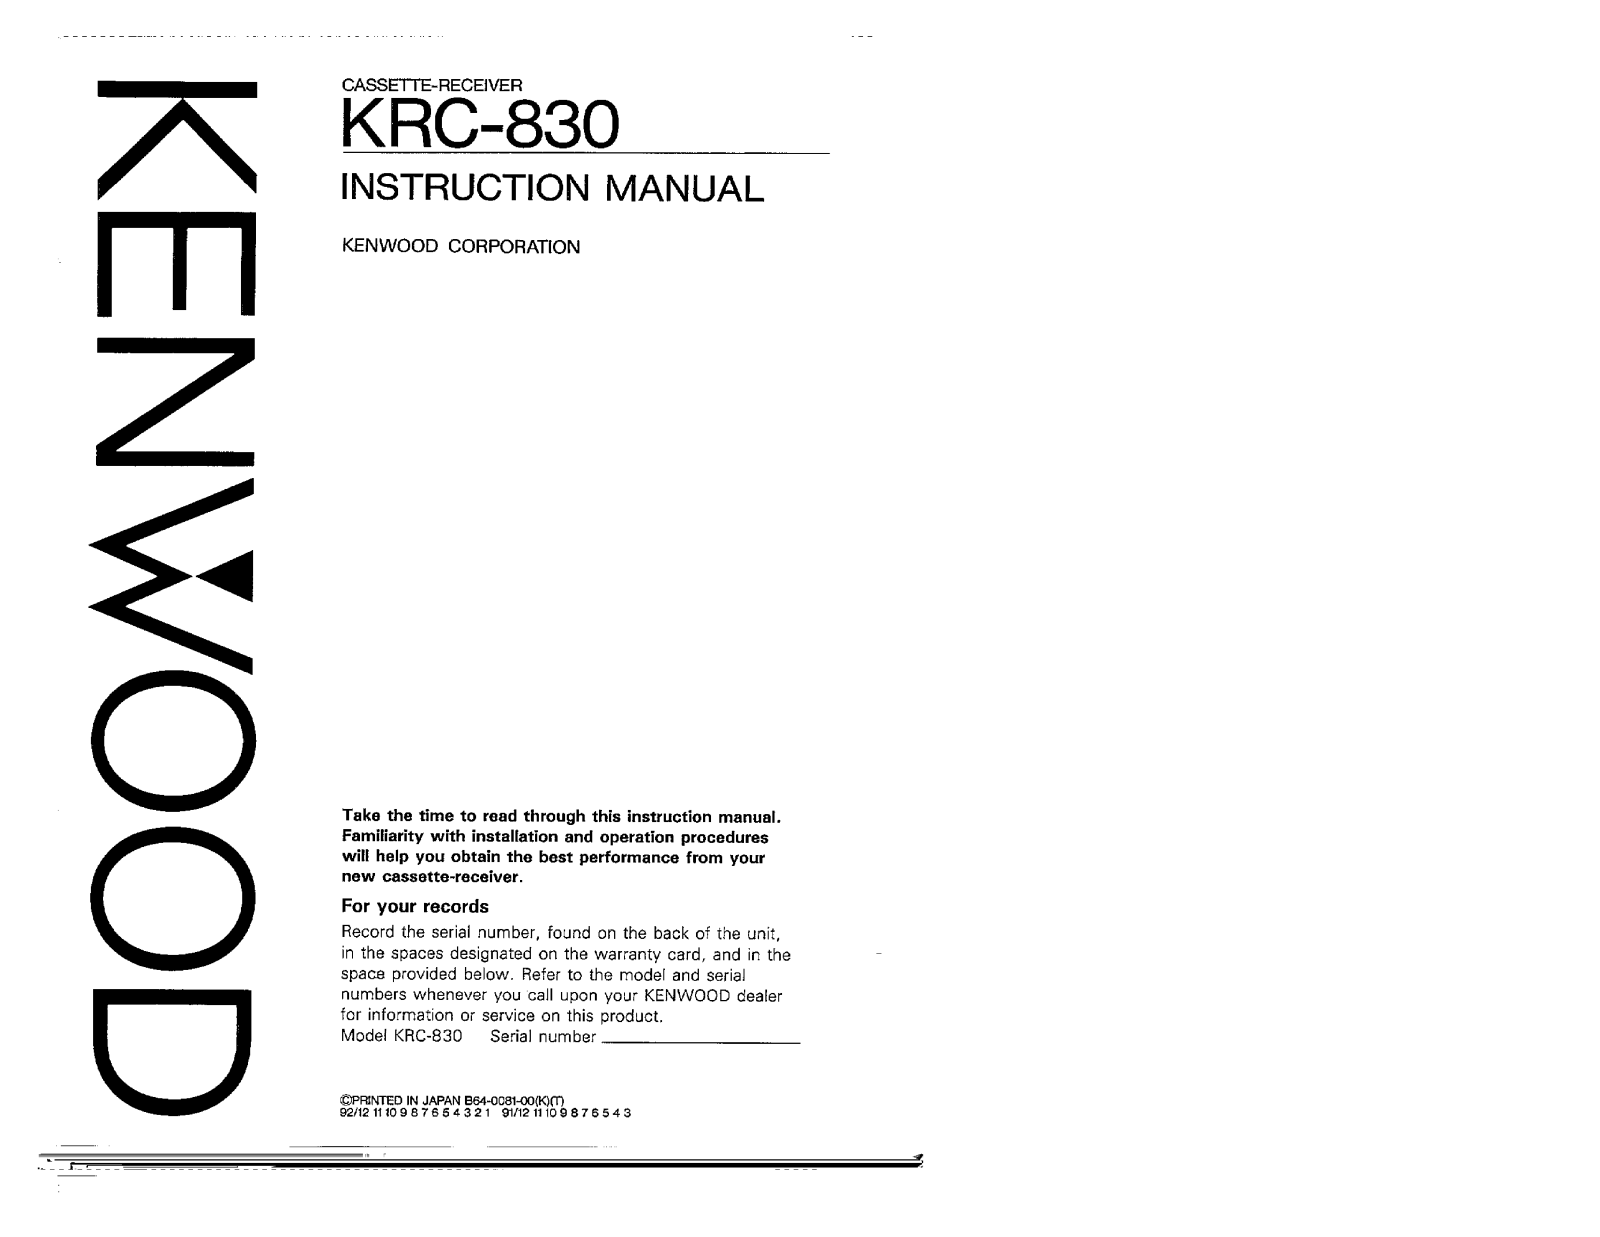 Kenwood KRC-830 Owner's Manual